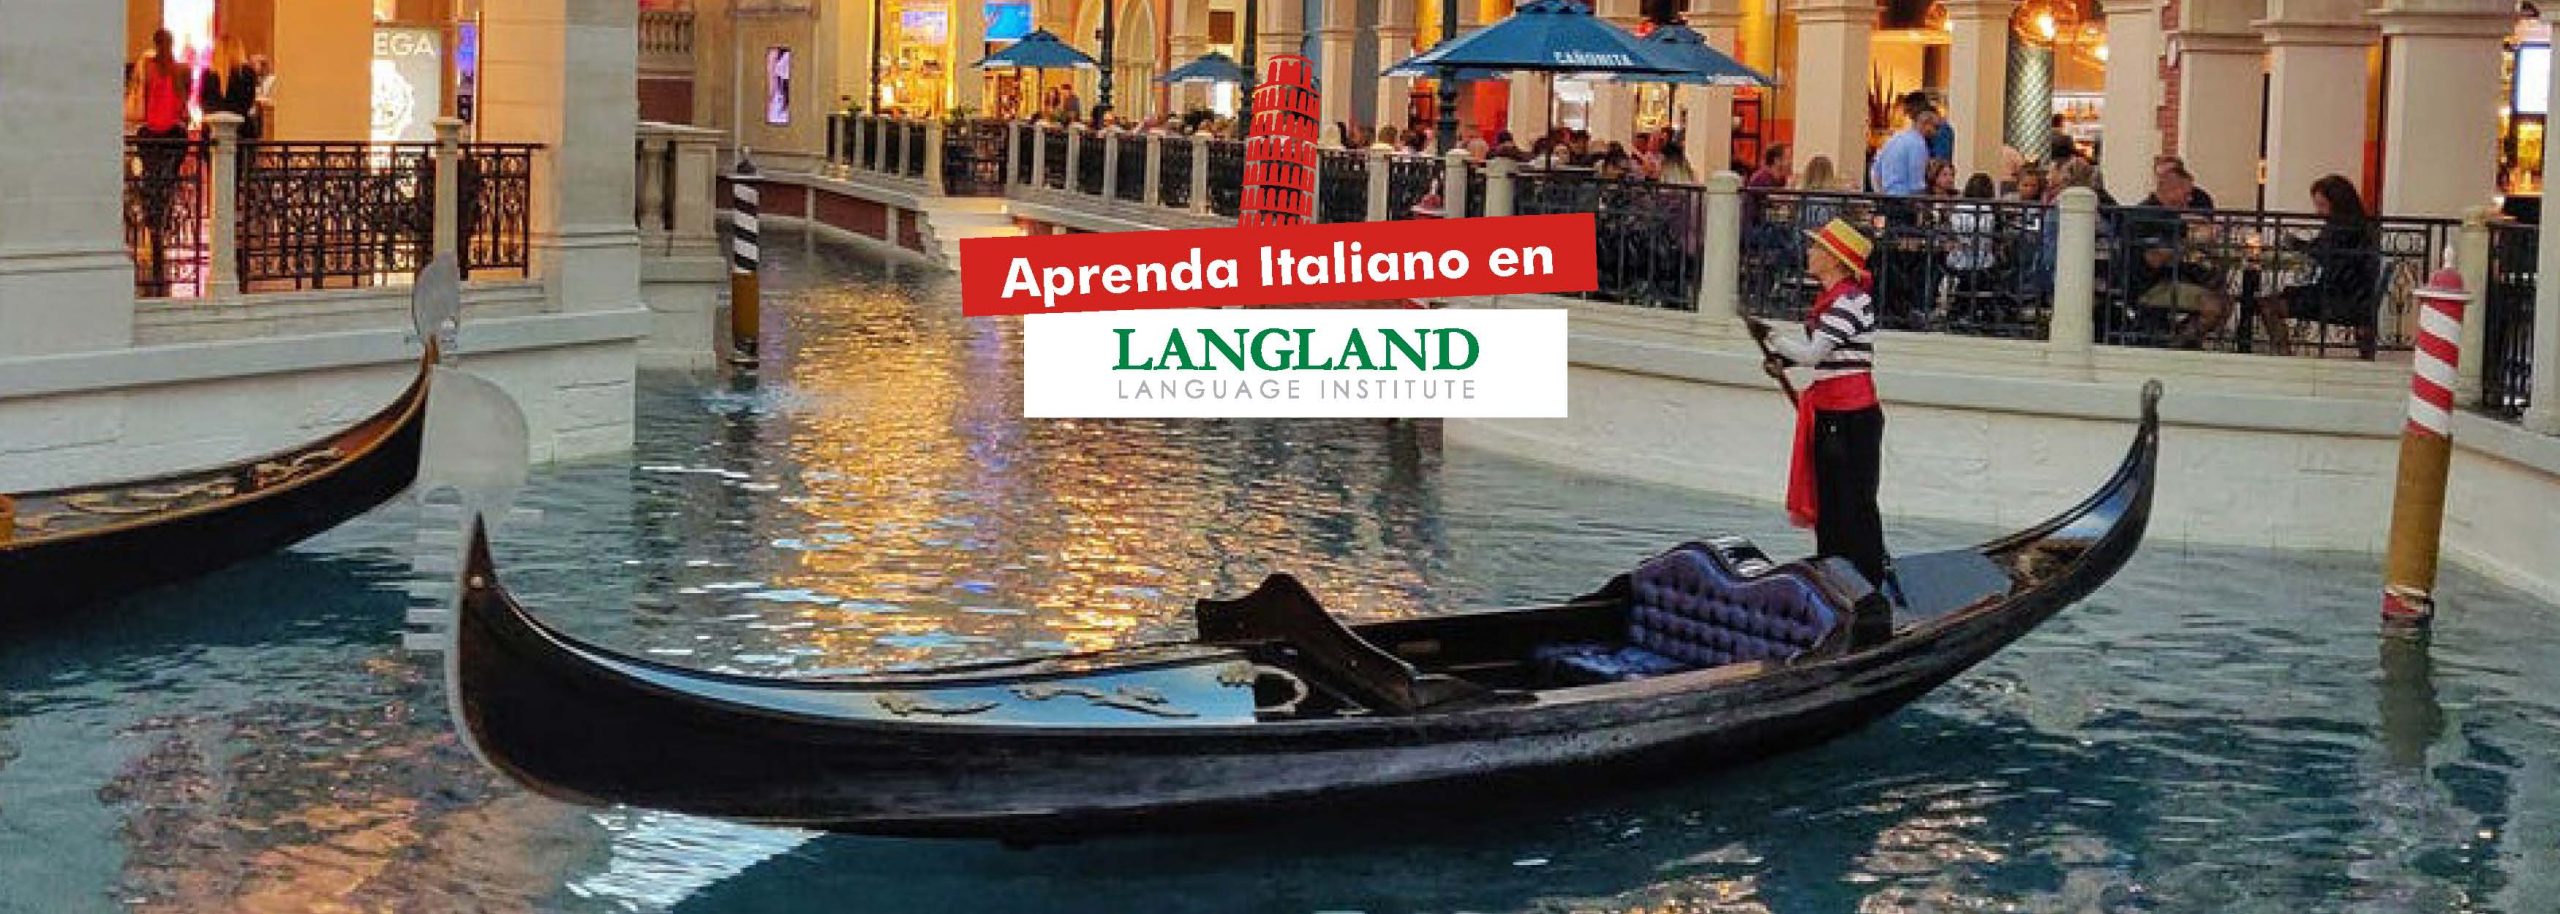 Apenda-italiano-en-Langland